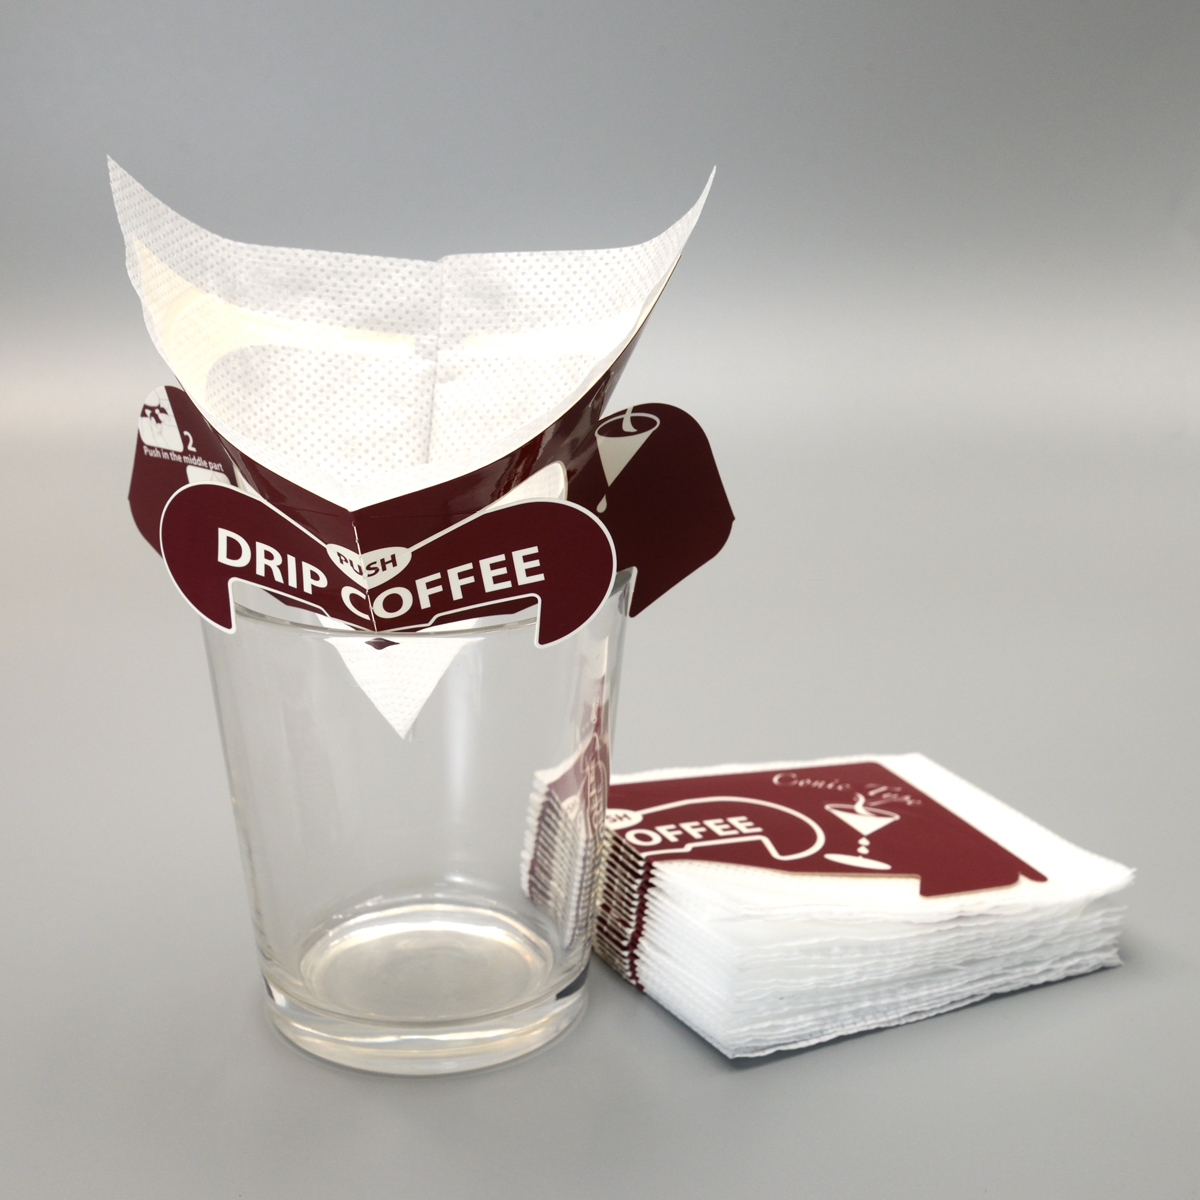 V-Drip koffiefiltersakke met pasgemaakte afdrukke